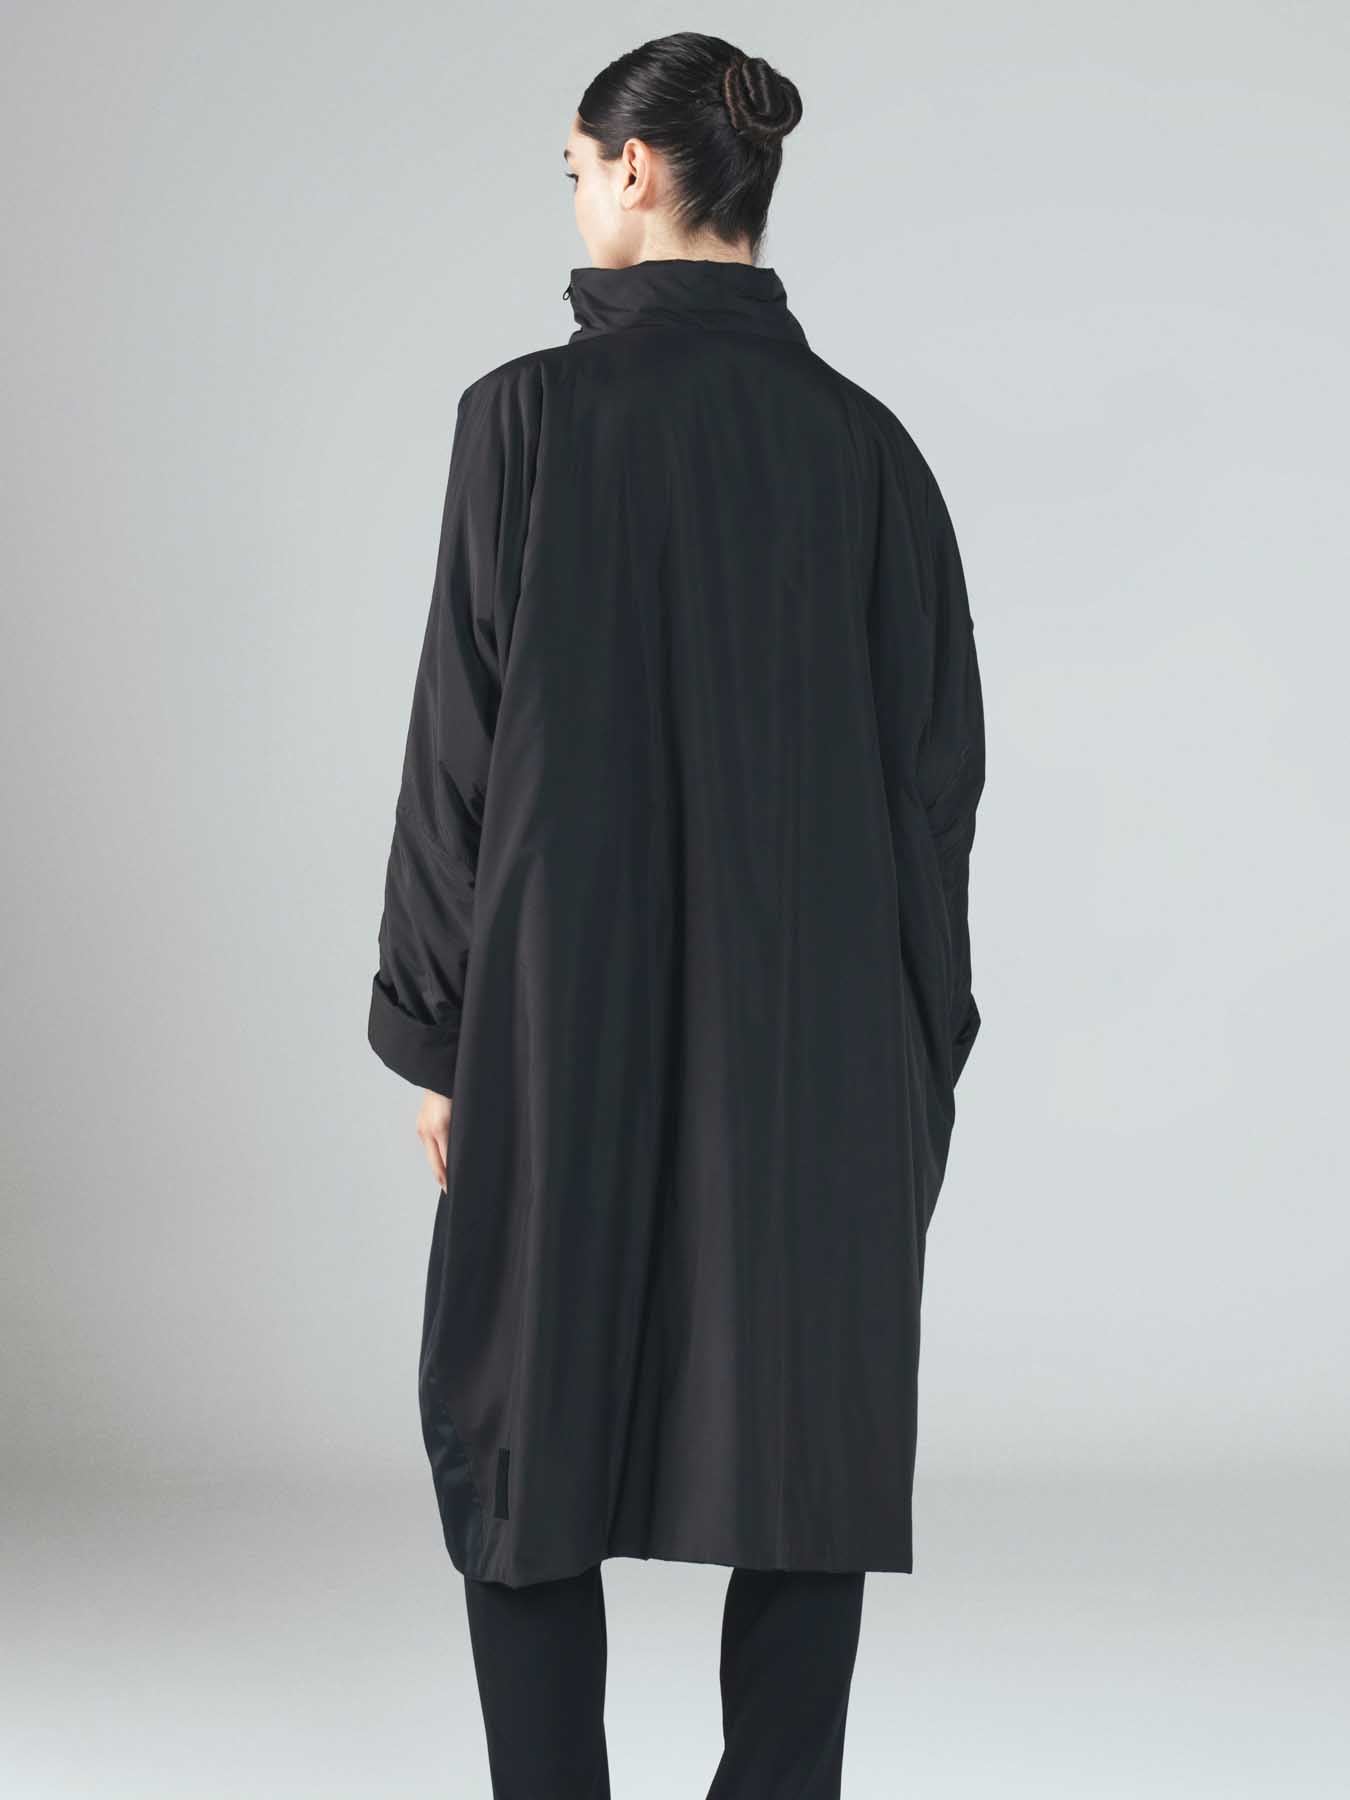 Igor Dobranic Spain Coat, Black Multi - Statement Boutique